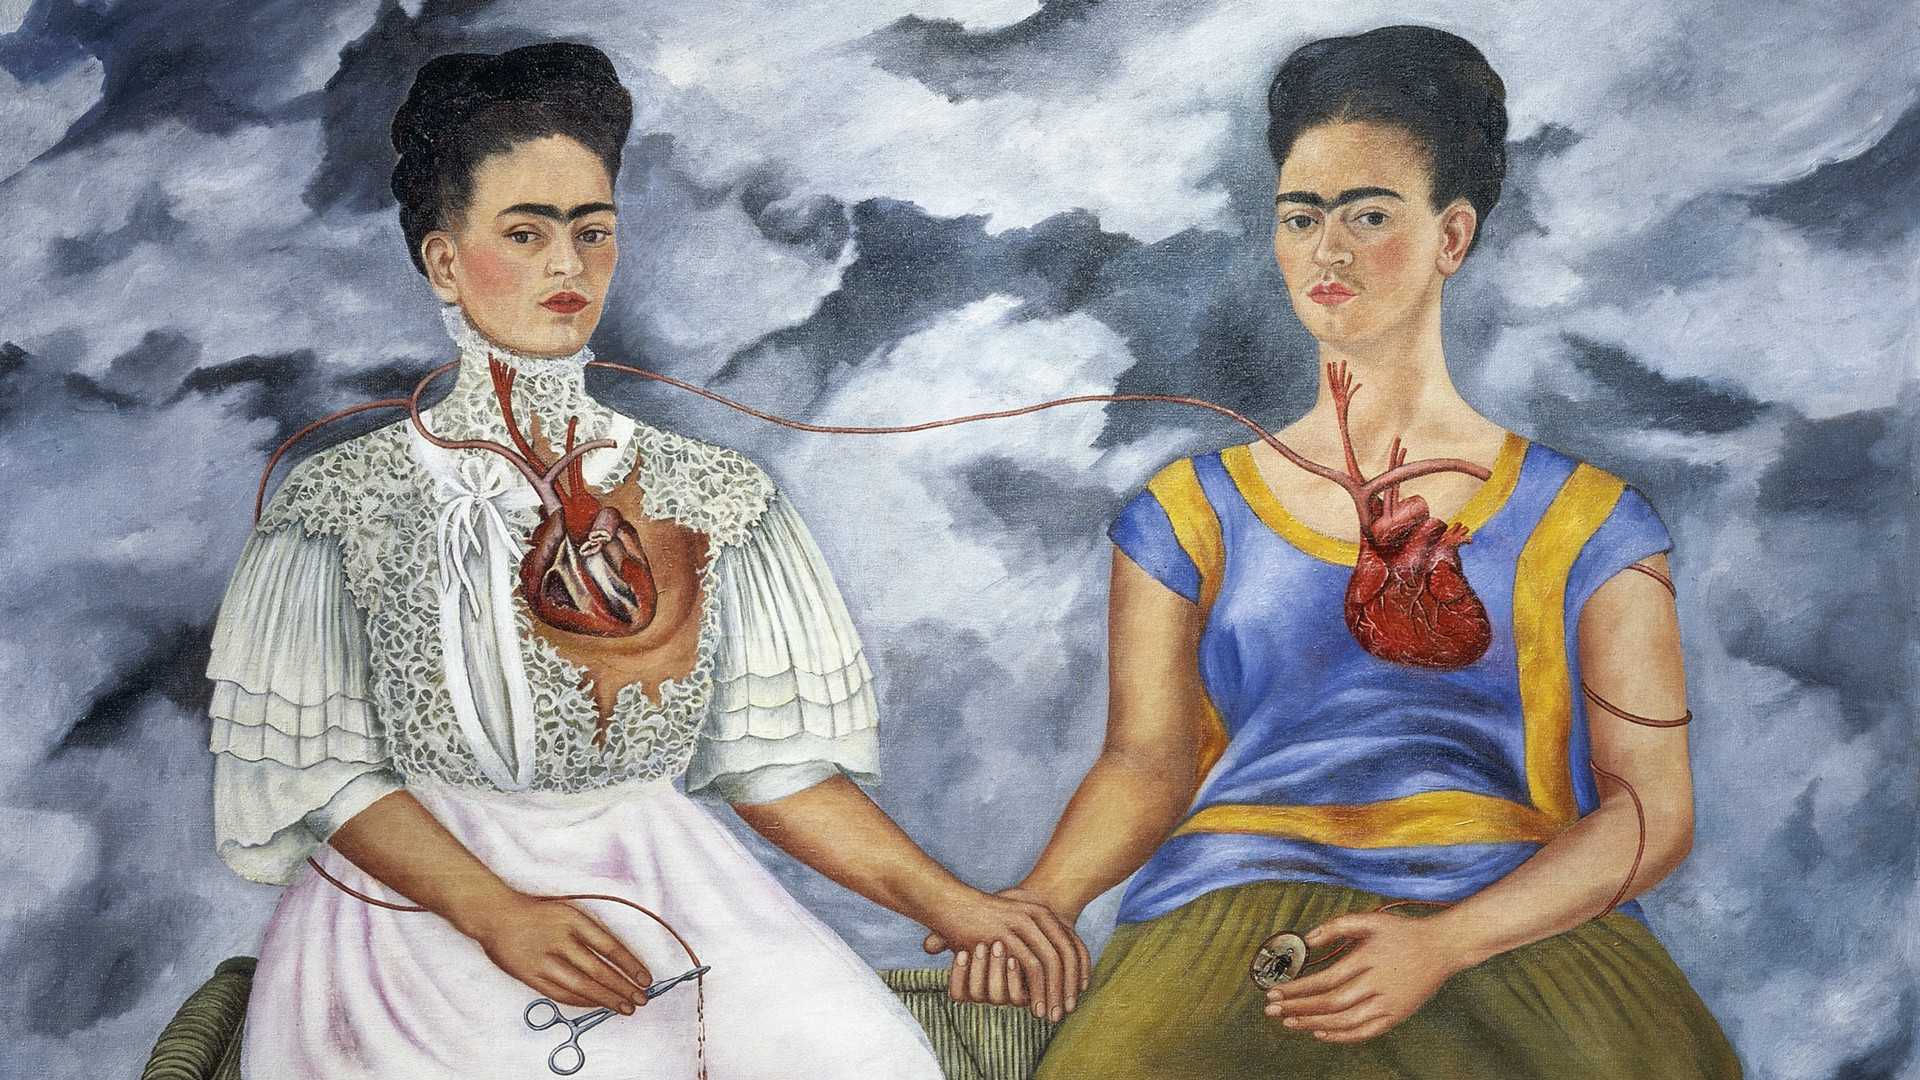 Autorretrato de frida kahlo